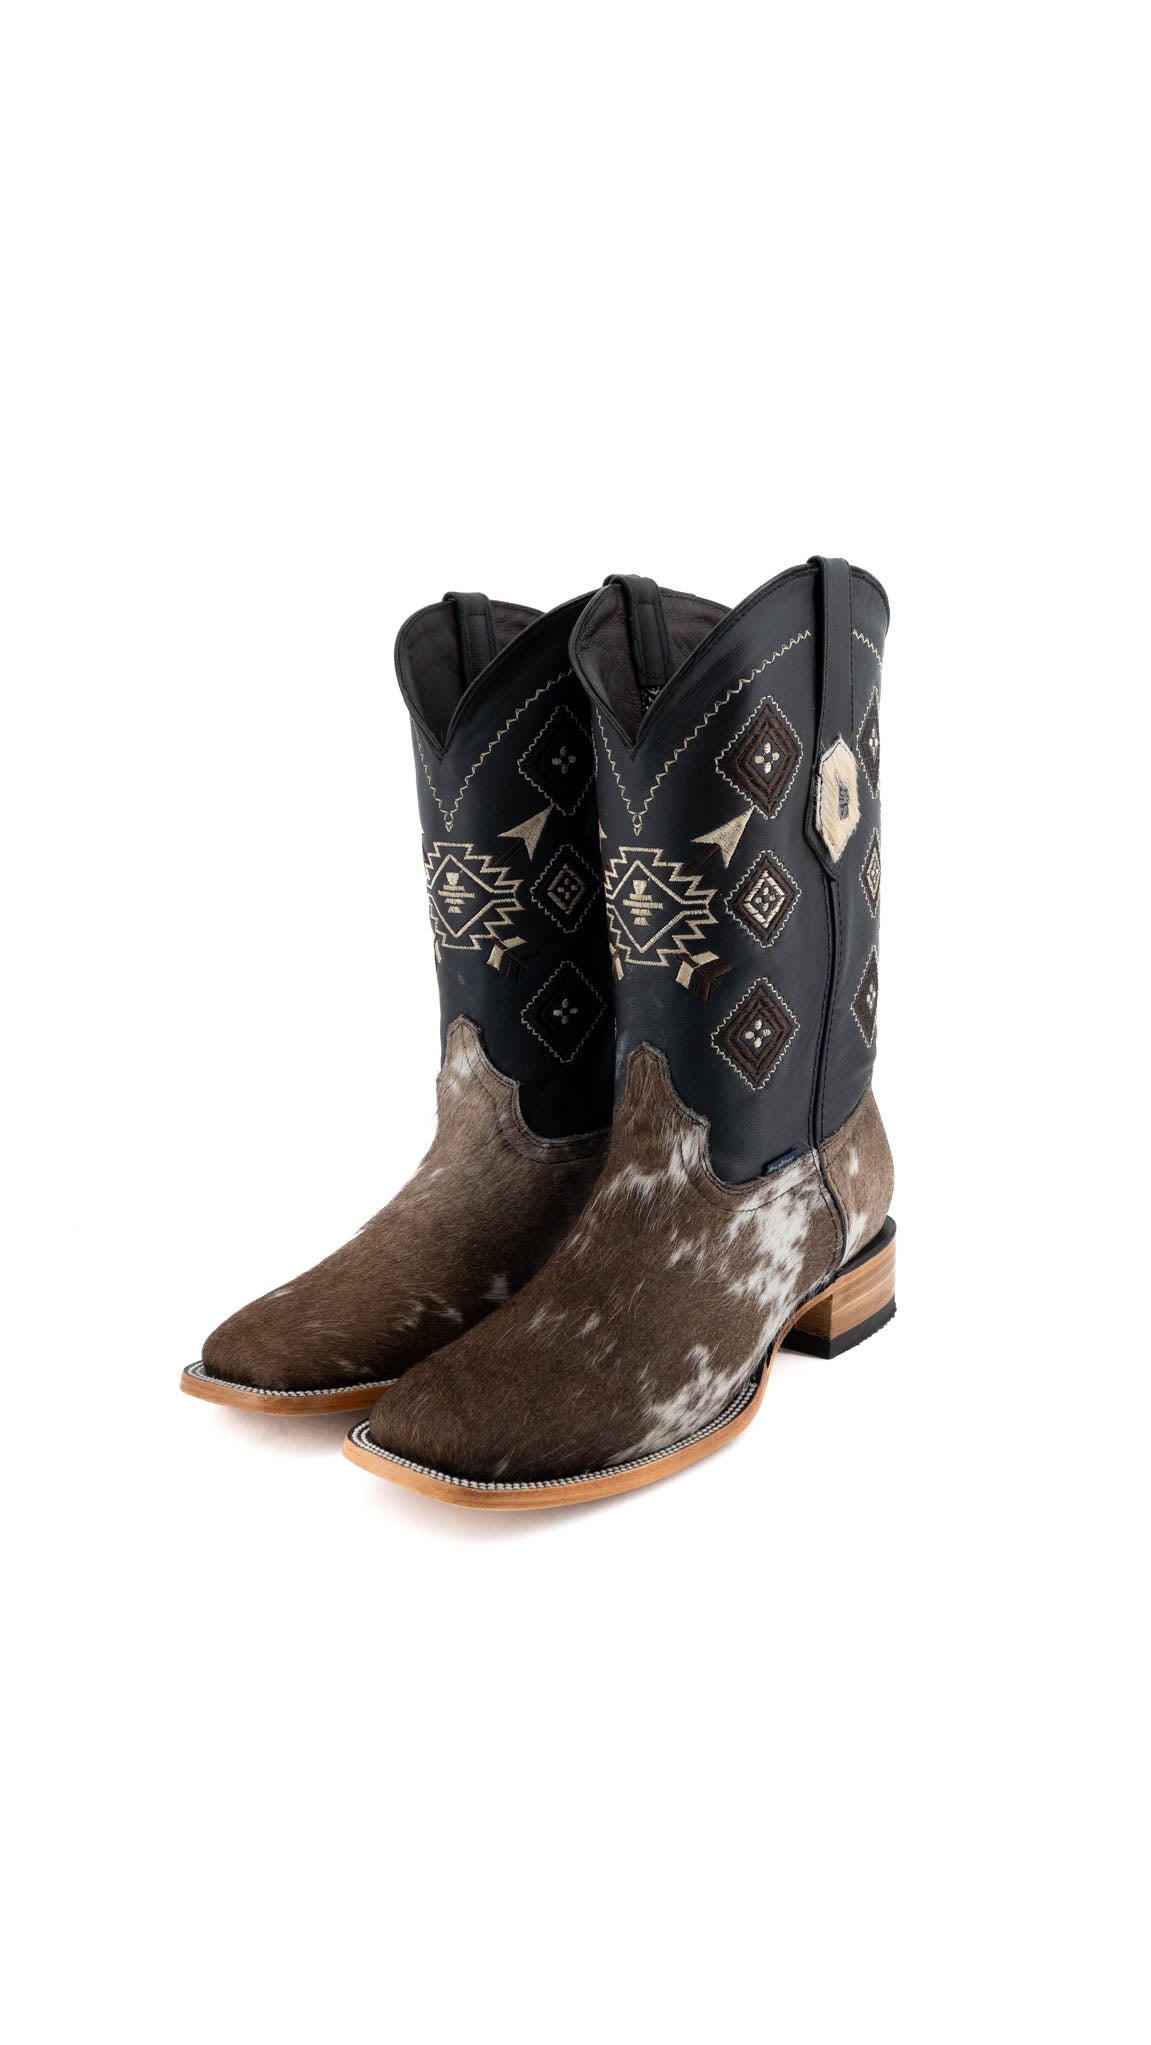 Men's Cowhide Cowboy Boots Size 11 Box FS10 FINAL SALE